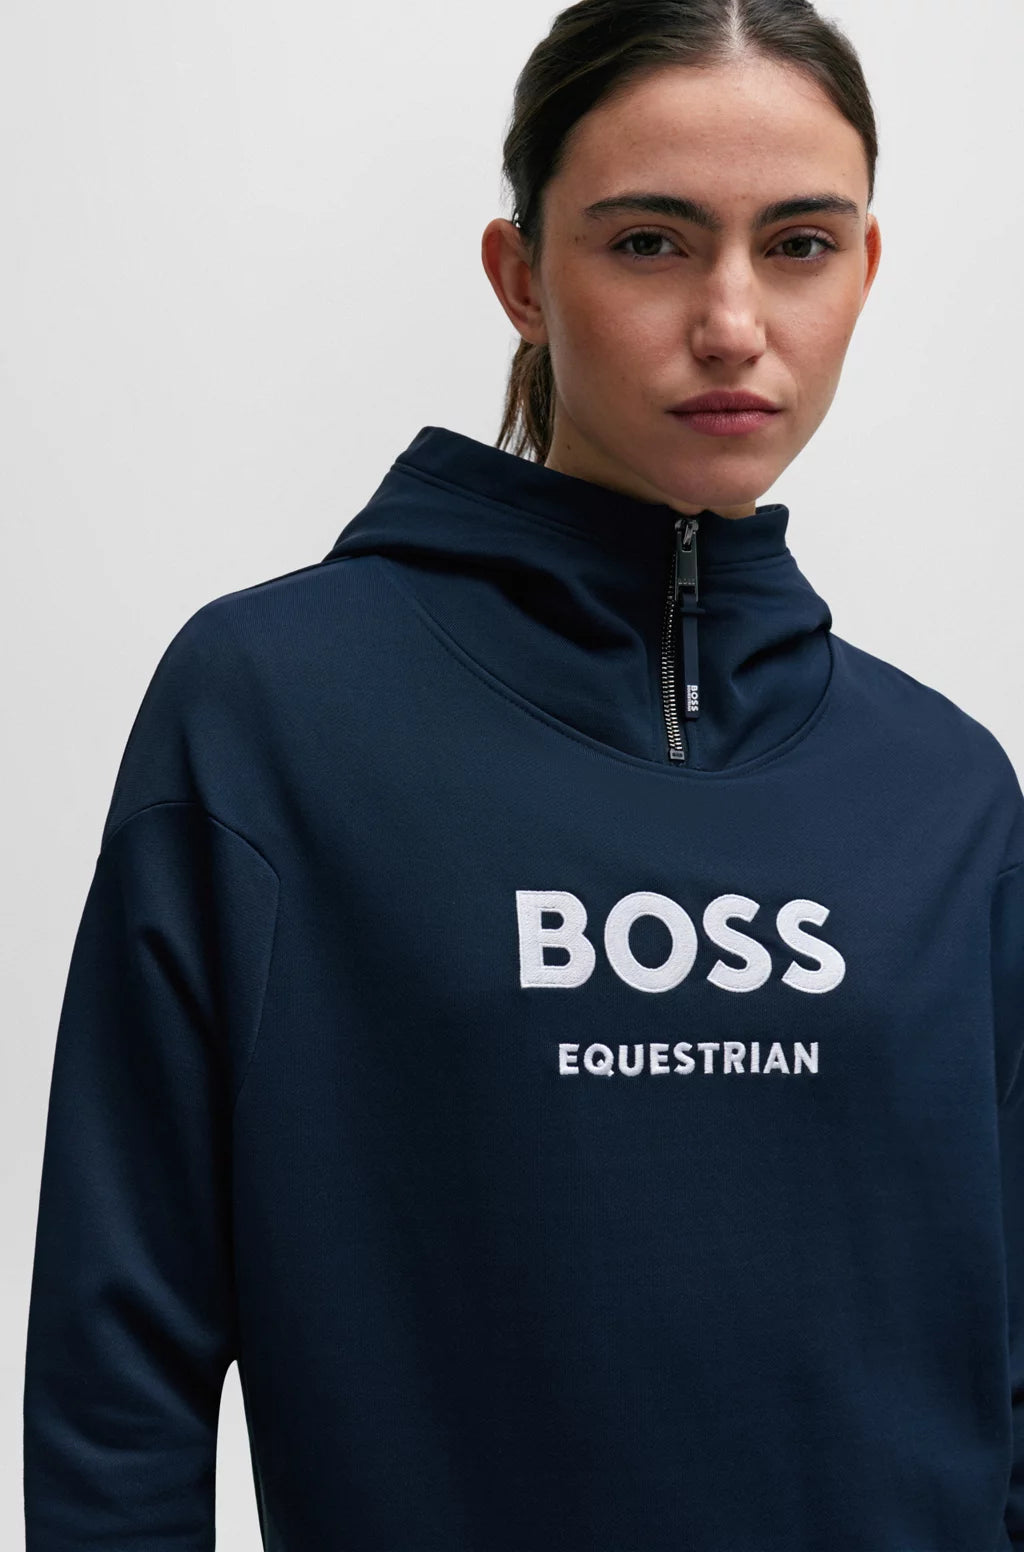 Boss Equestrian Womens - Faye logo Zip hoodie